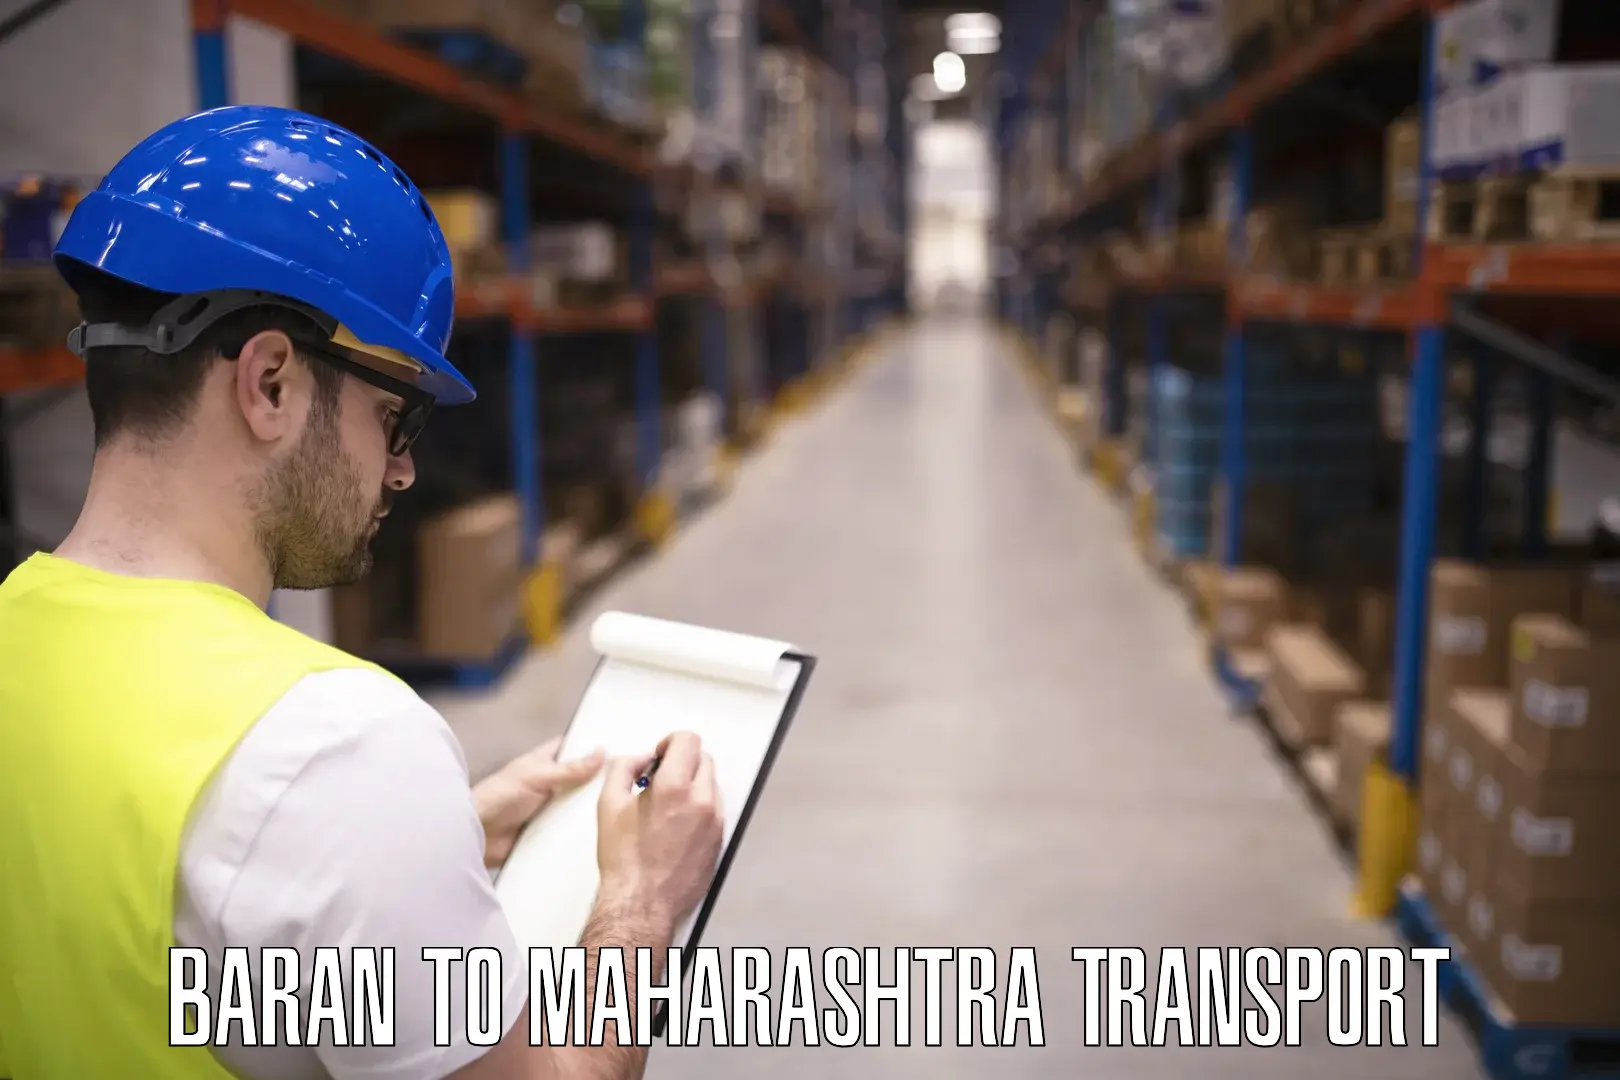 Truck transport companies in India Baran to Maharashtra